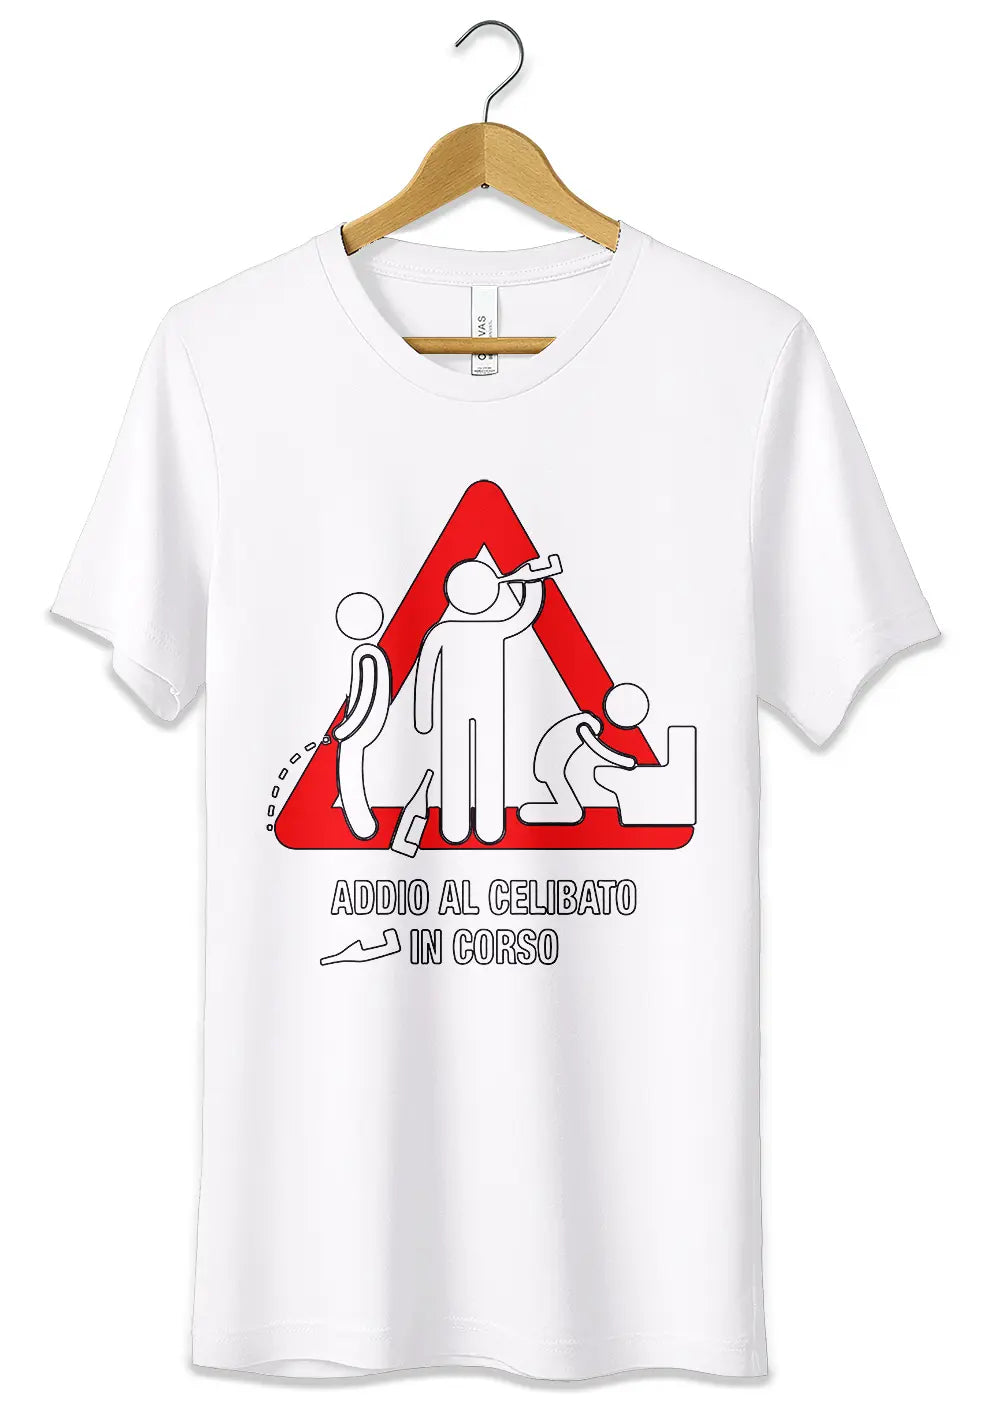 T-Shirt Maglietta Addio al Celibato In Corso T-Shirt CmrDesignStore XS Bianco 